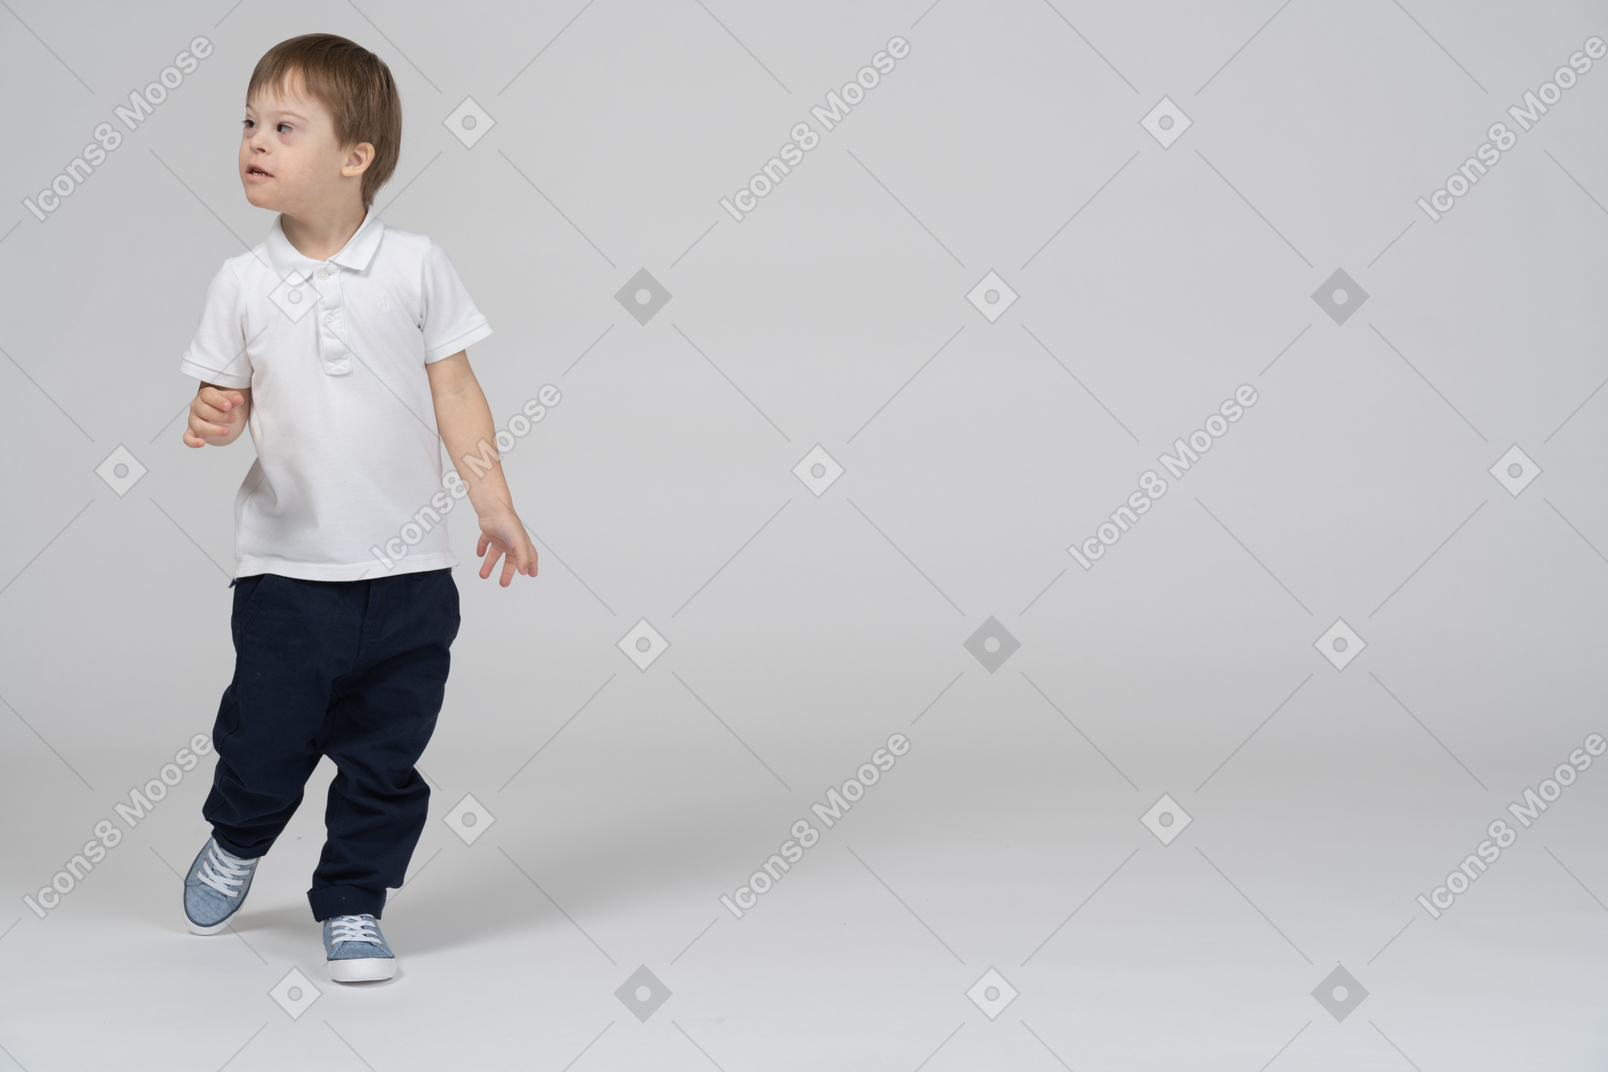 Little boy walking toward the camera